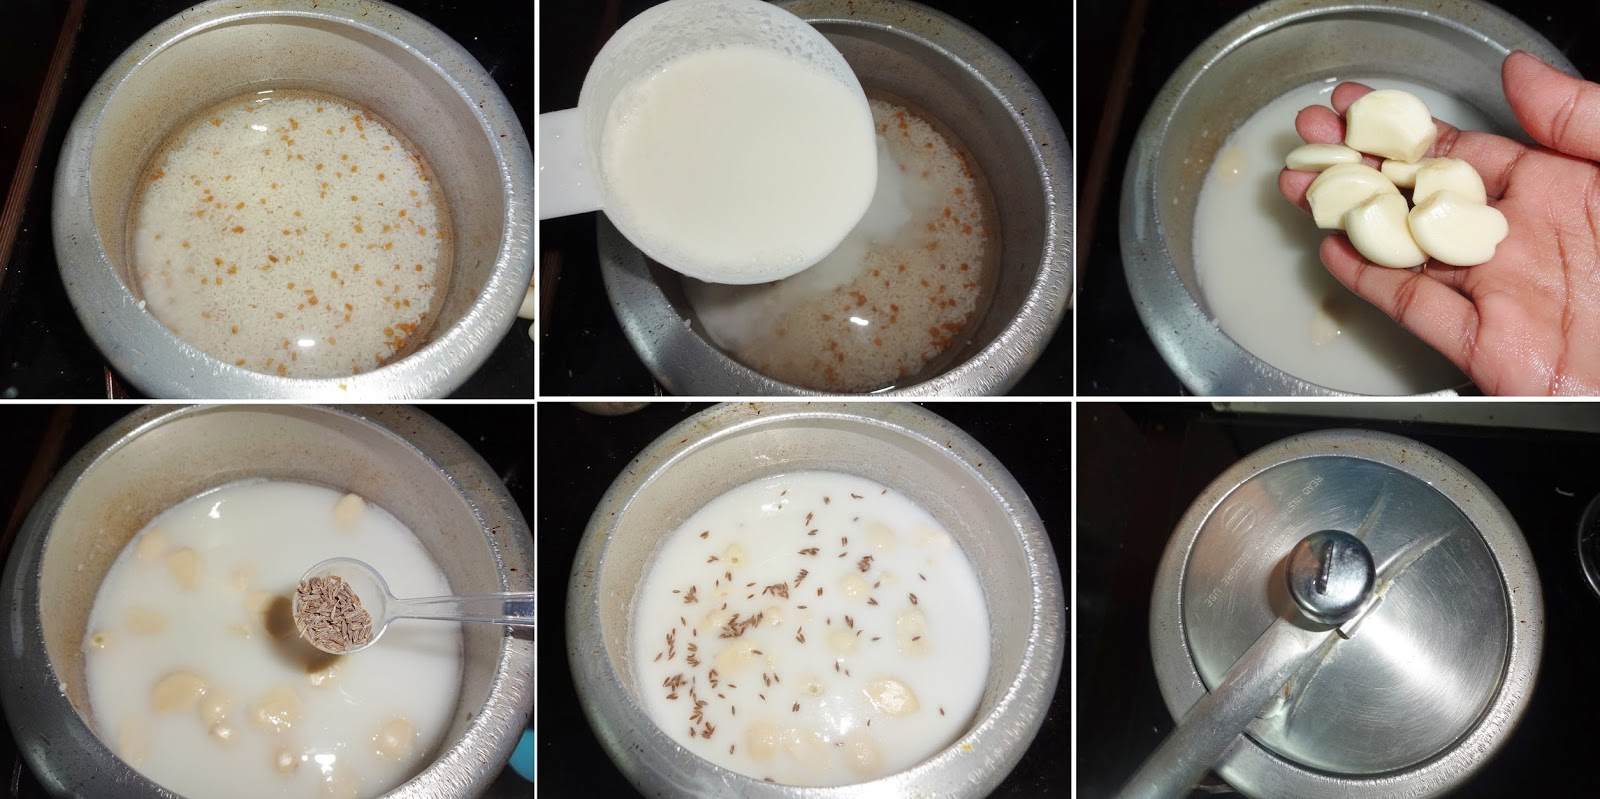 فوائد وصفات الحليب مع الثوم  مع الوصفات7